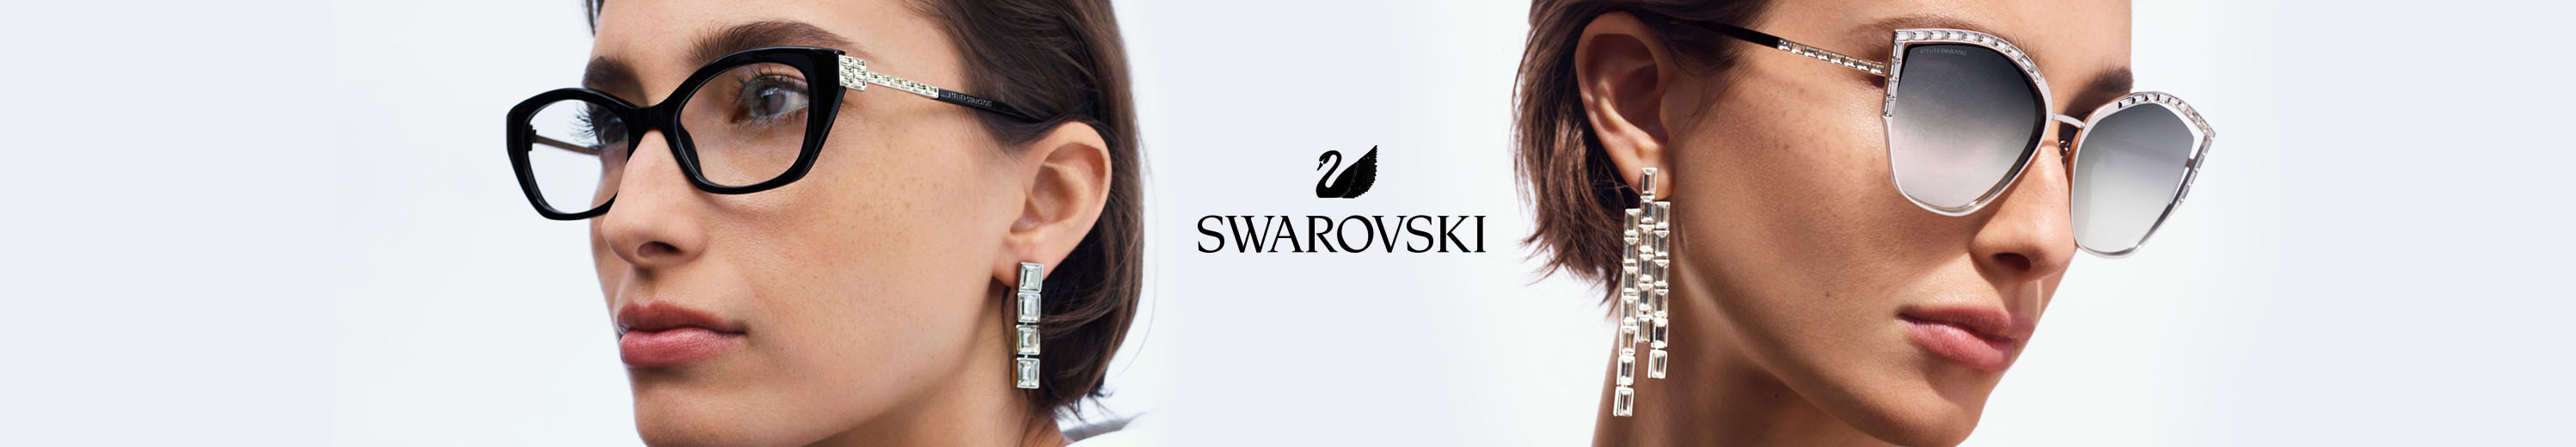 Swarovski Glasses and Eyewear